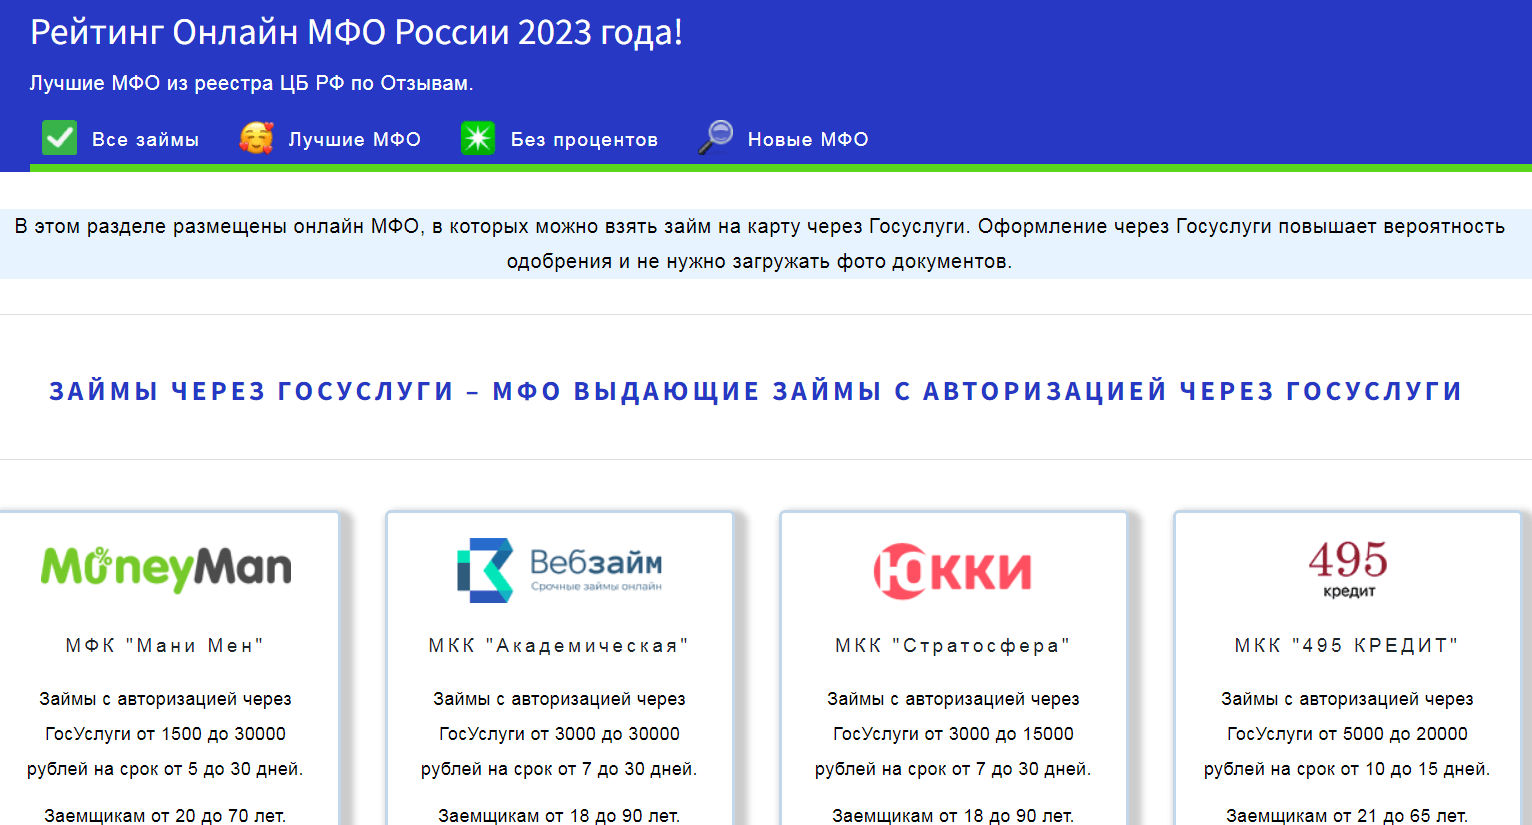 рейтинг онлайн МФО в России